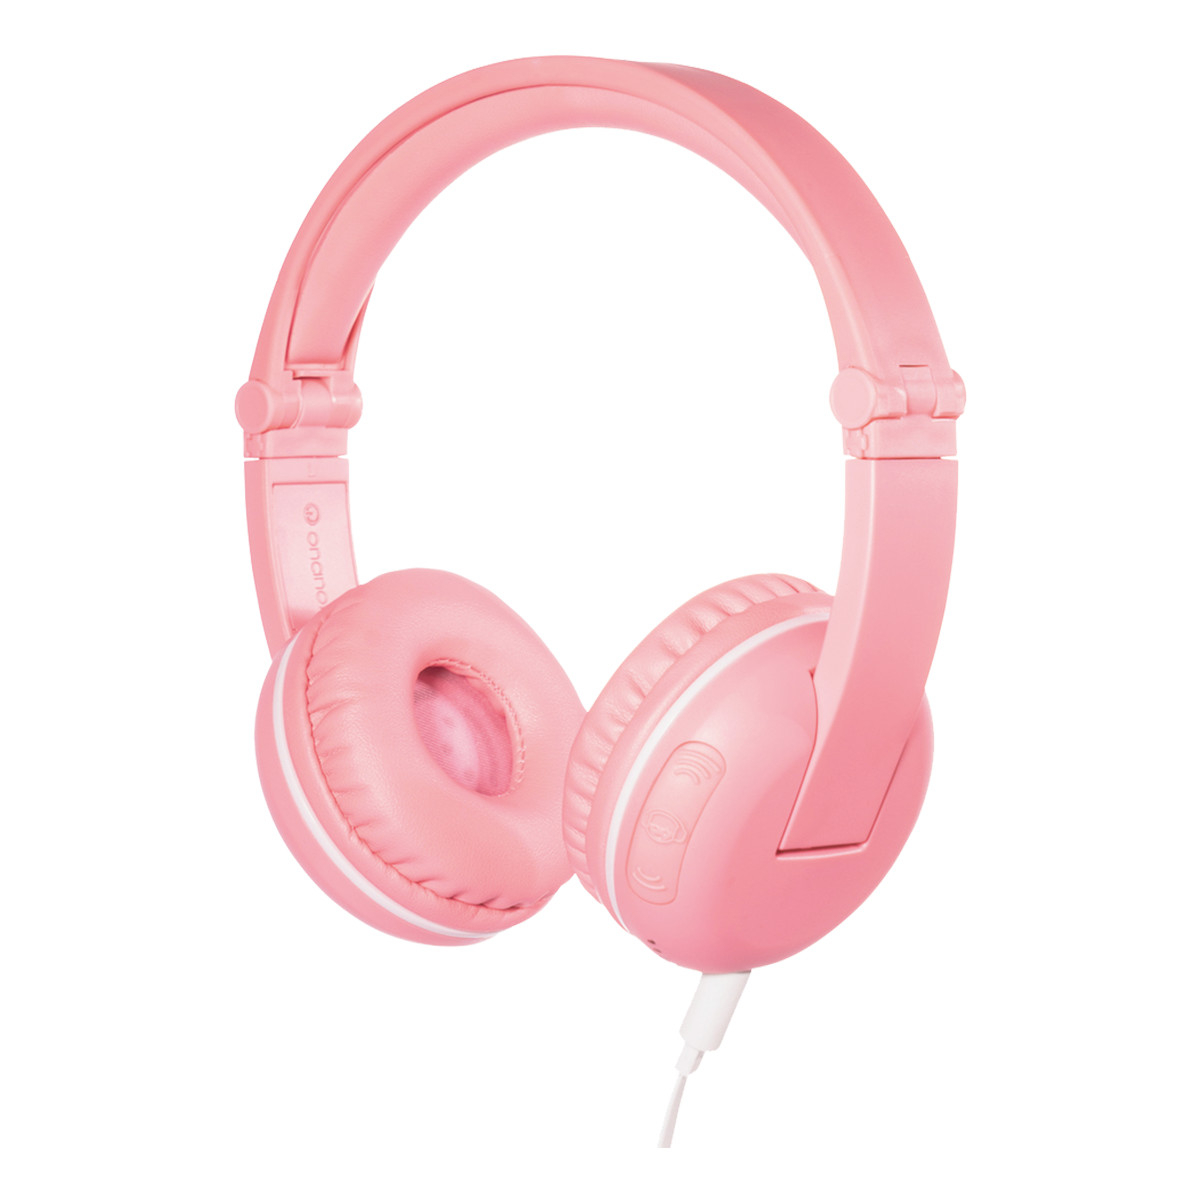 BuddyPhones Play trådlösa barnhörlurar, Bluetooth, rosa